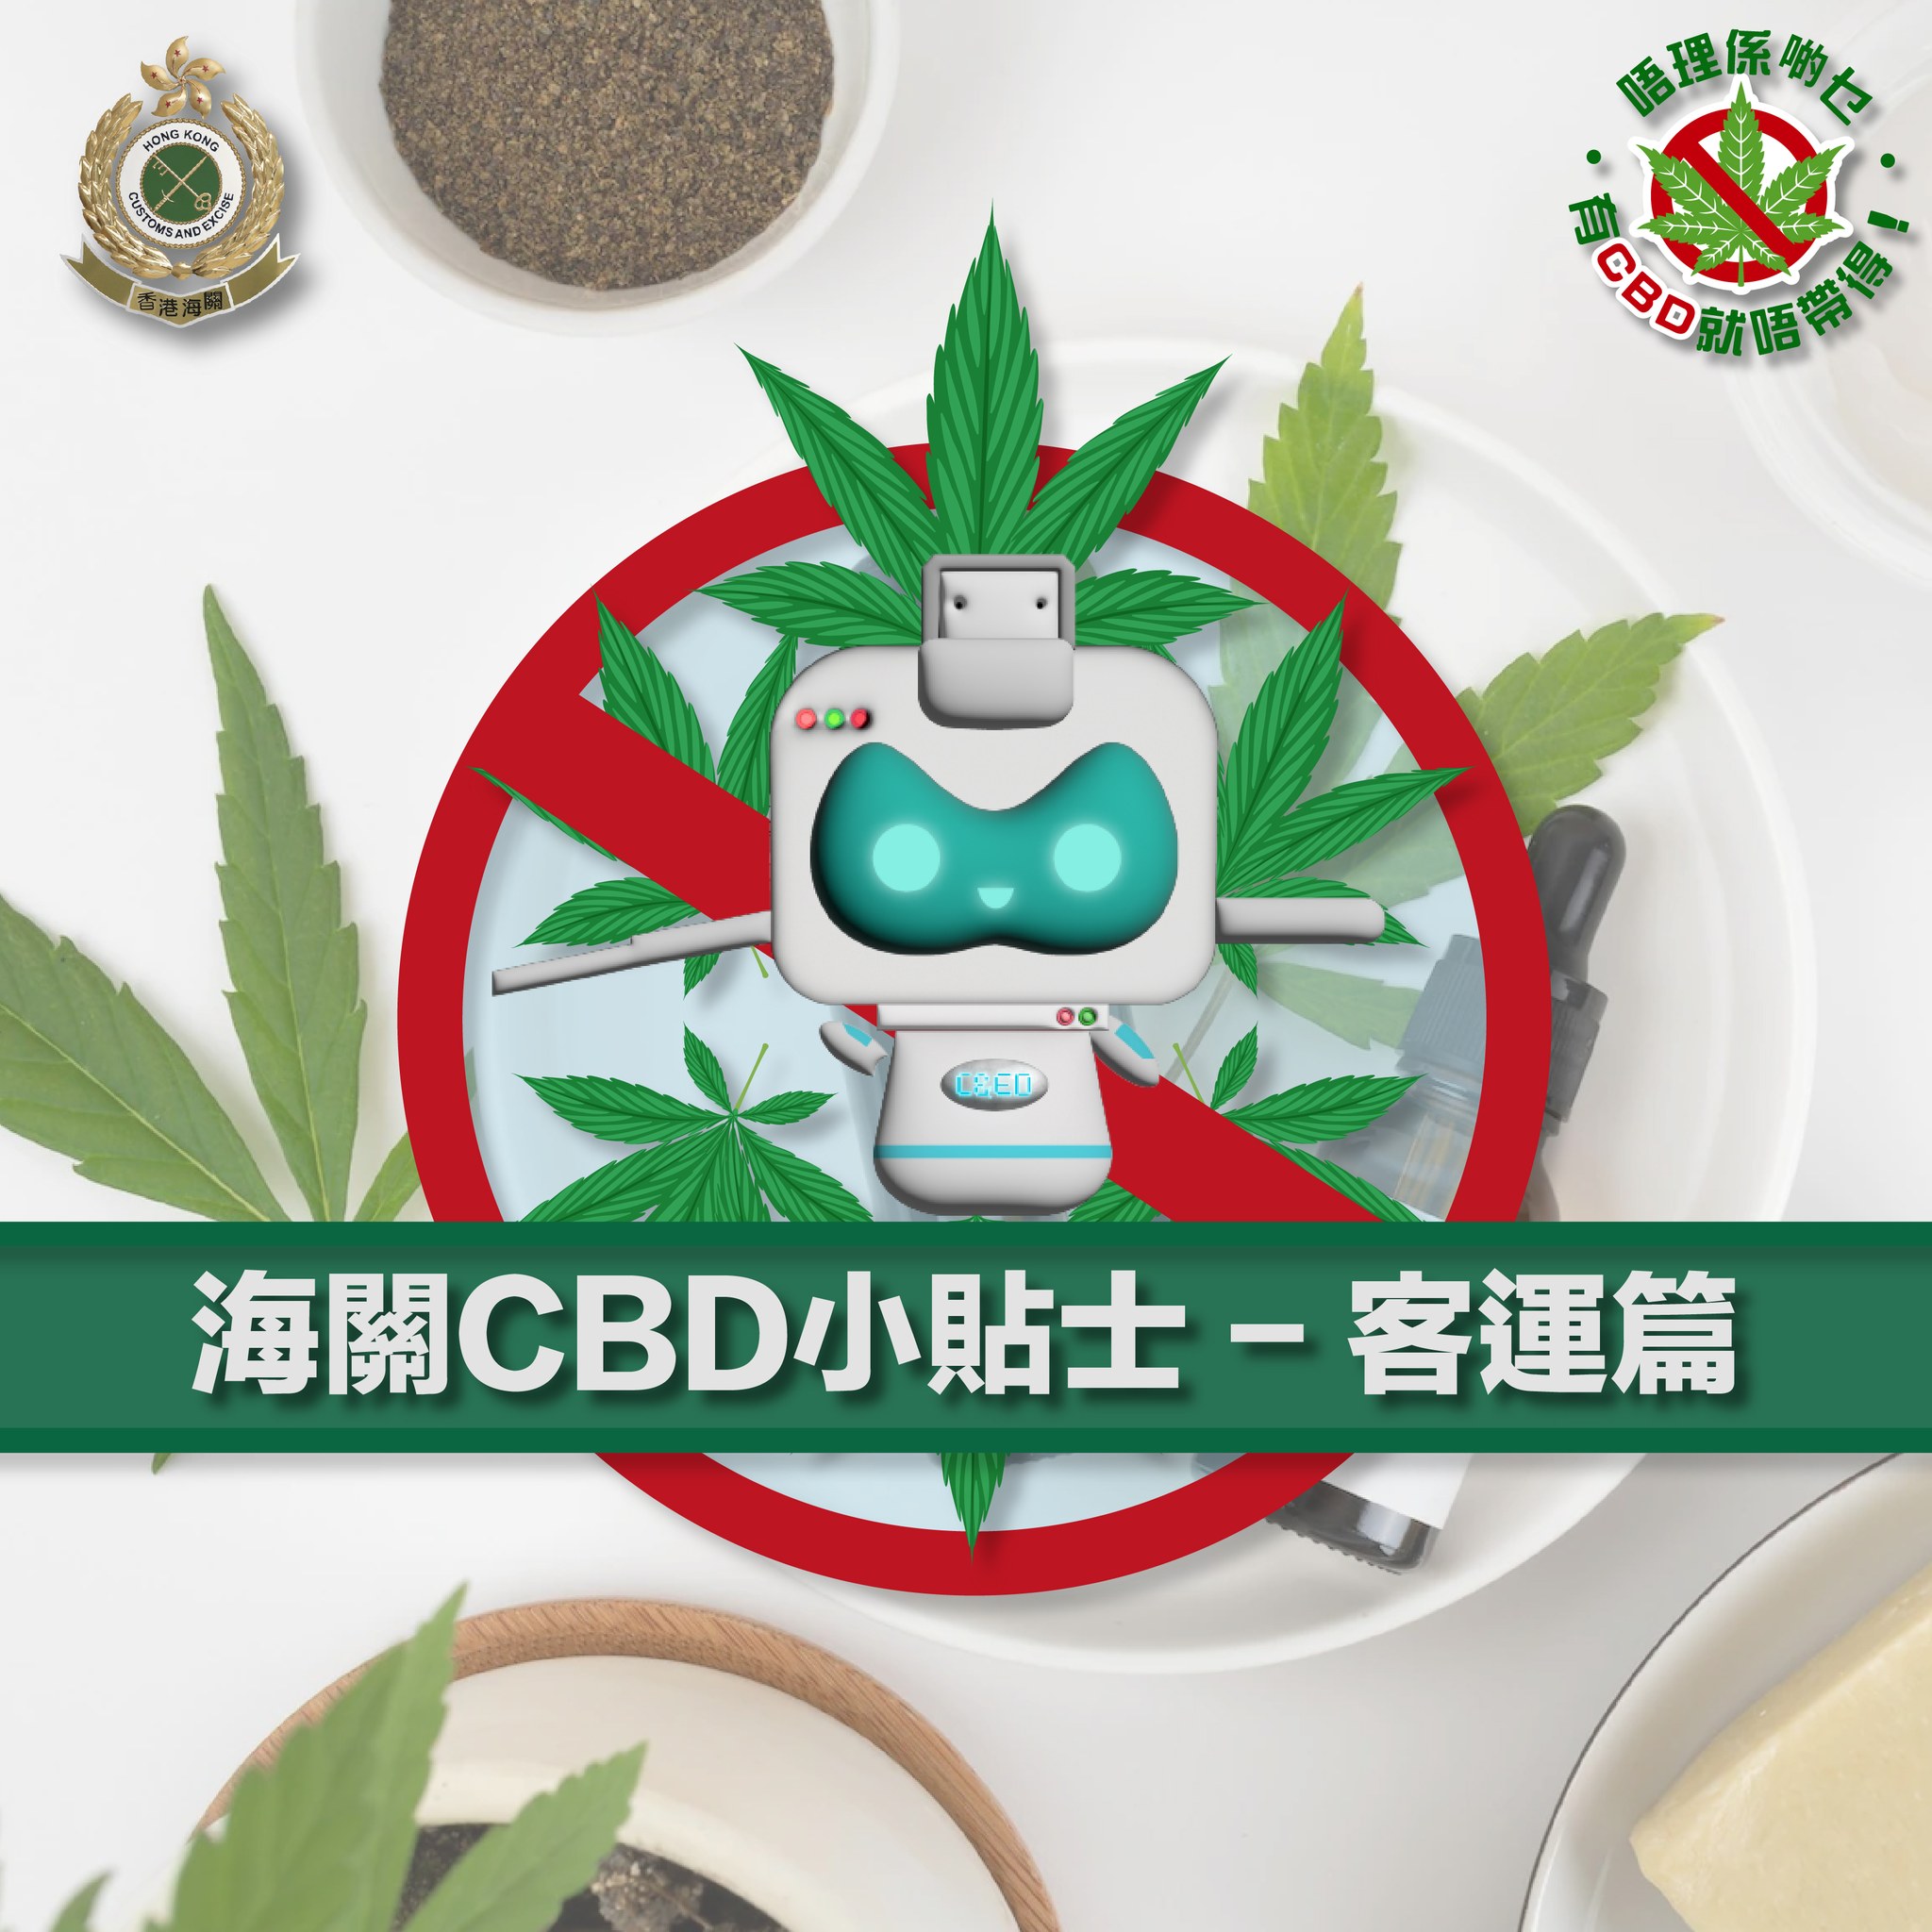 由2023年2月1日起CBD(大麻二酚)已按照香港法例被列為毒品